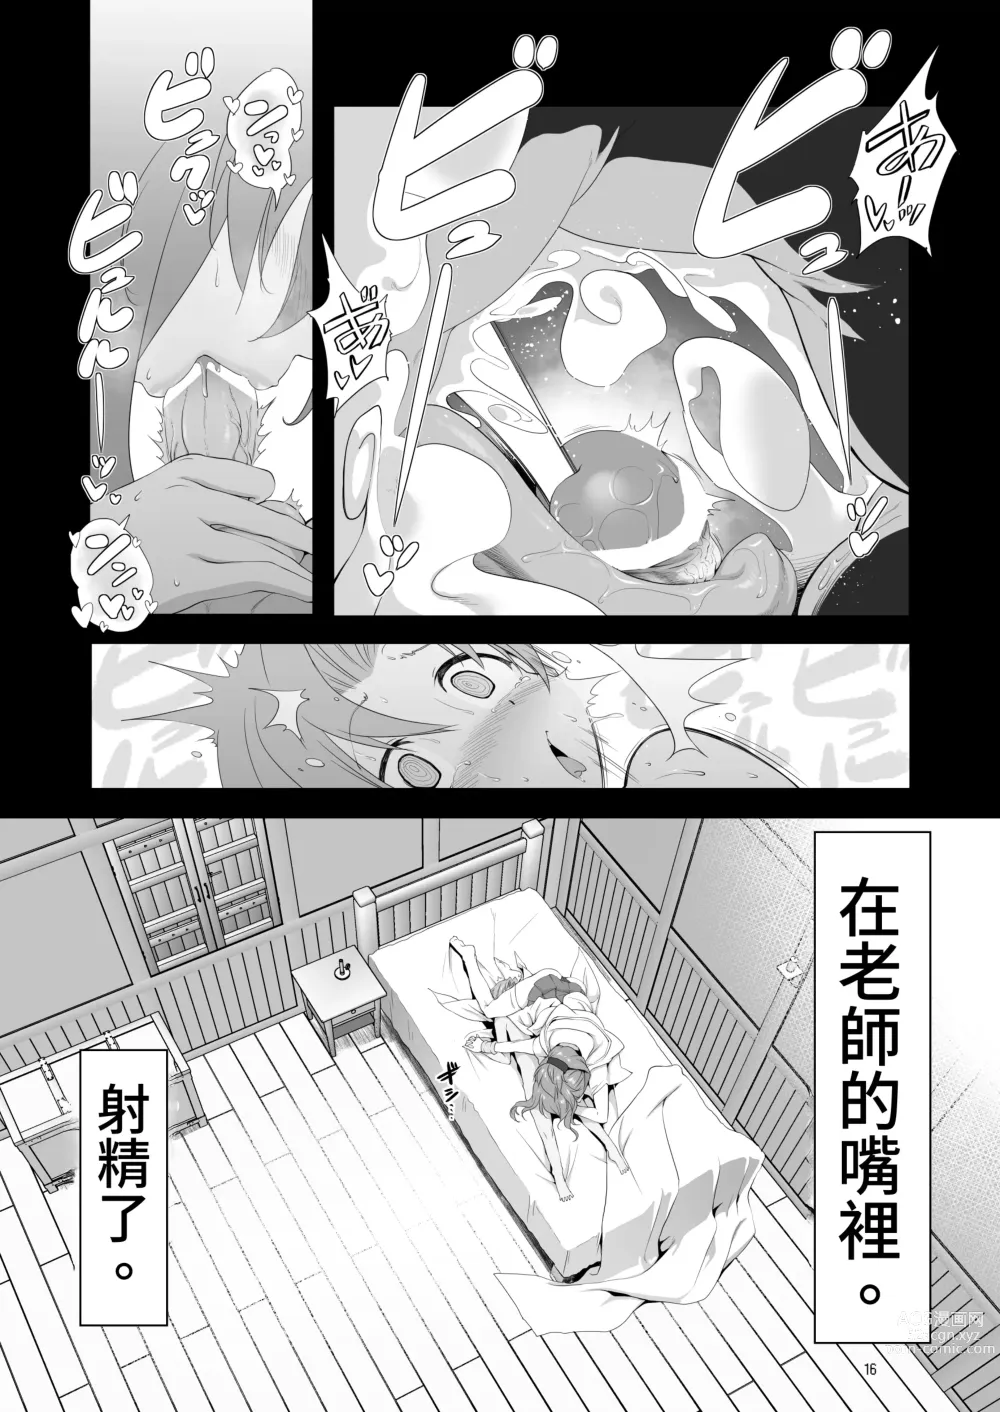 Page 16 of doujinshi Makotoni Zannen desu ga Bouken no Sho 9 wa Kiete Shimaimashita.